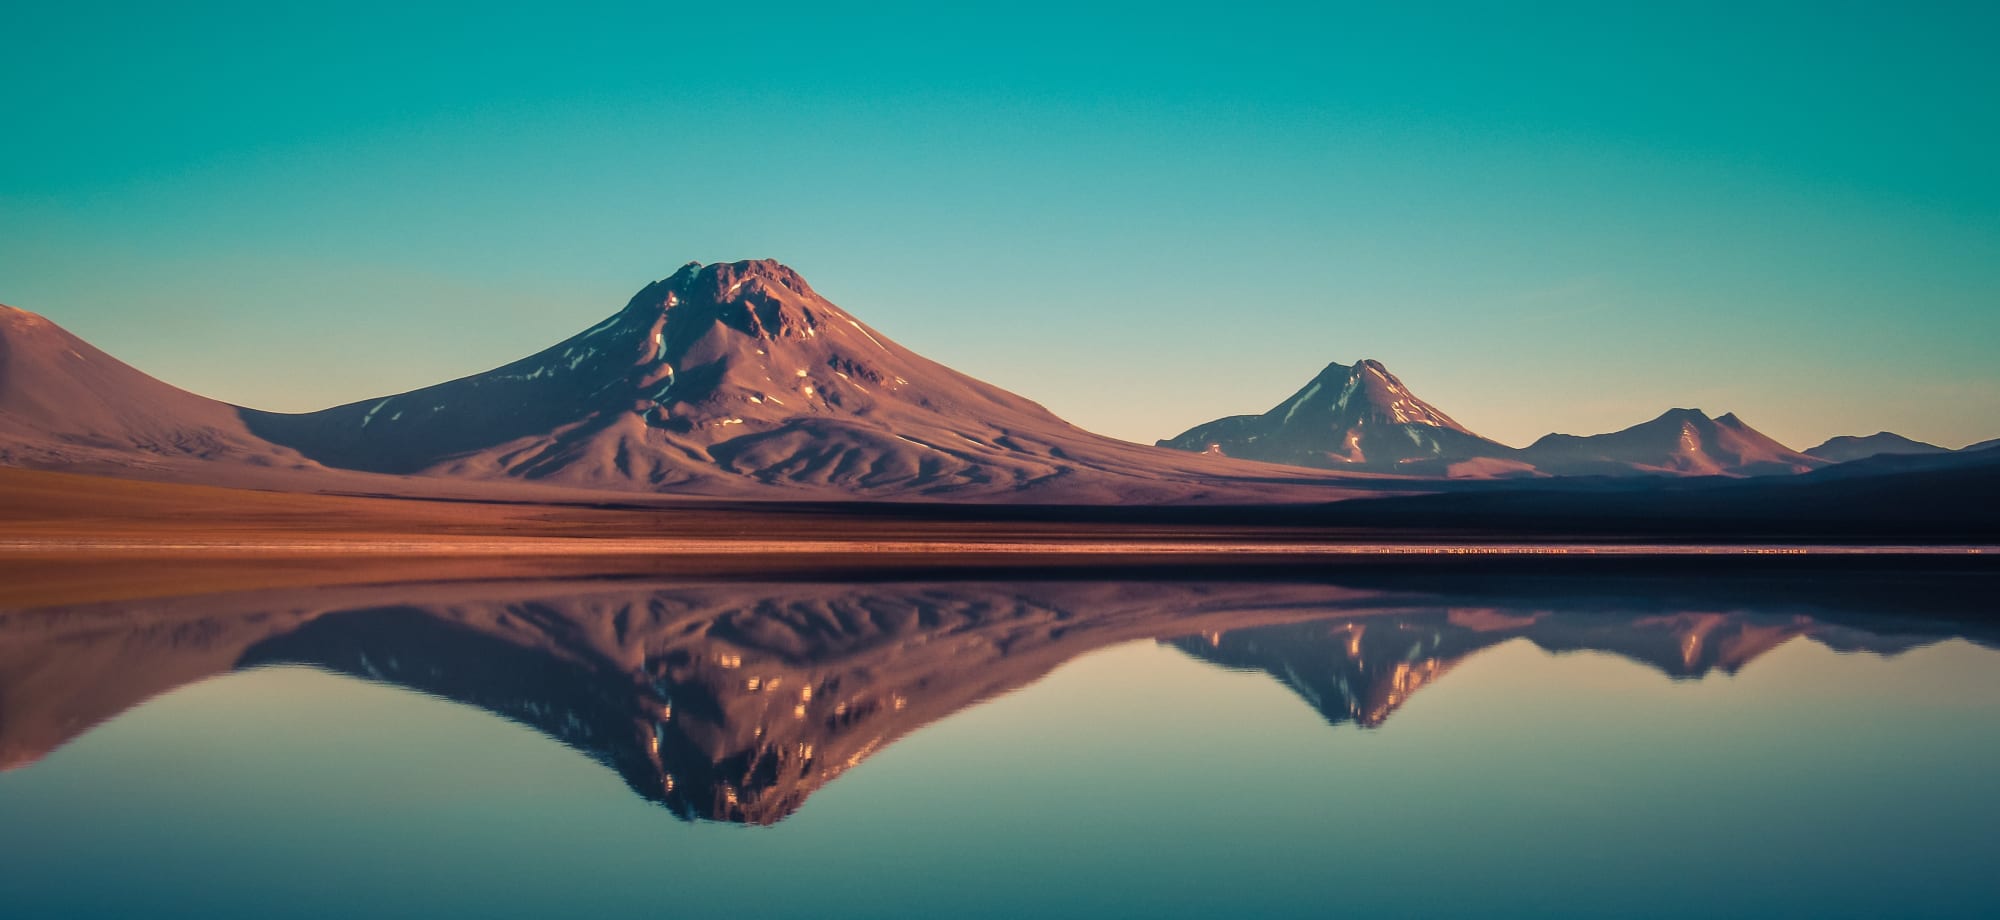 San Pedro de Atacama mountains are reflected into a lake. 